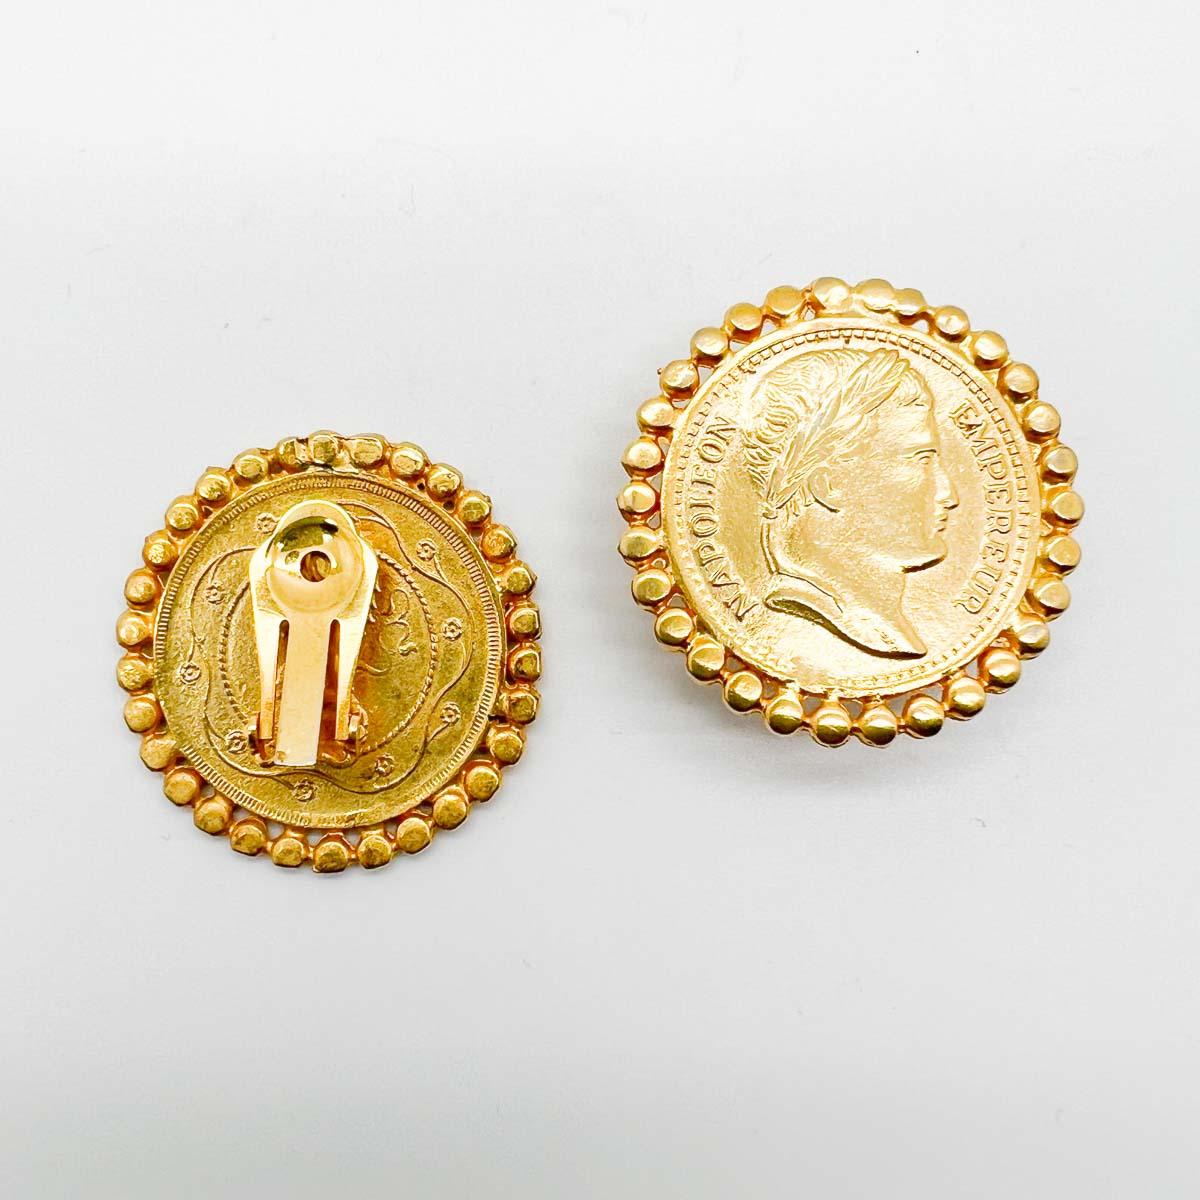 Ein Paar Vintage Napoleon-Münzen-Ohrringe. Klassische Münzohrringe mit glänzender Goldoberfläche und jeder Menge Stil.
Eine unsignierte Schönheit. Ein seltener Schatz. Nur weil ein Schmuckstück nicht den Namen eines Designers trägt, heißt das nicht,